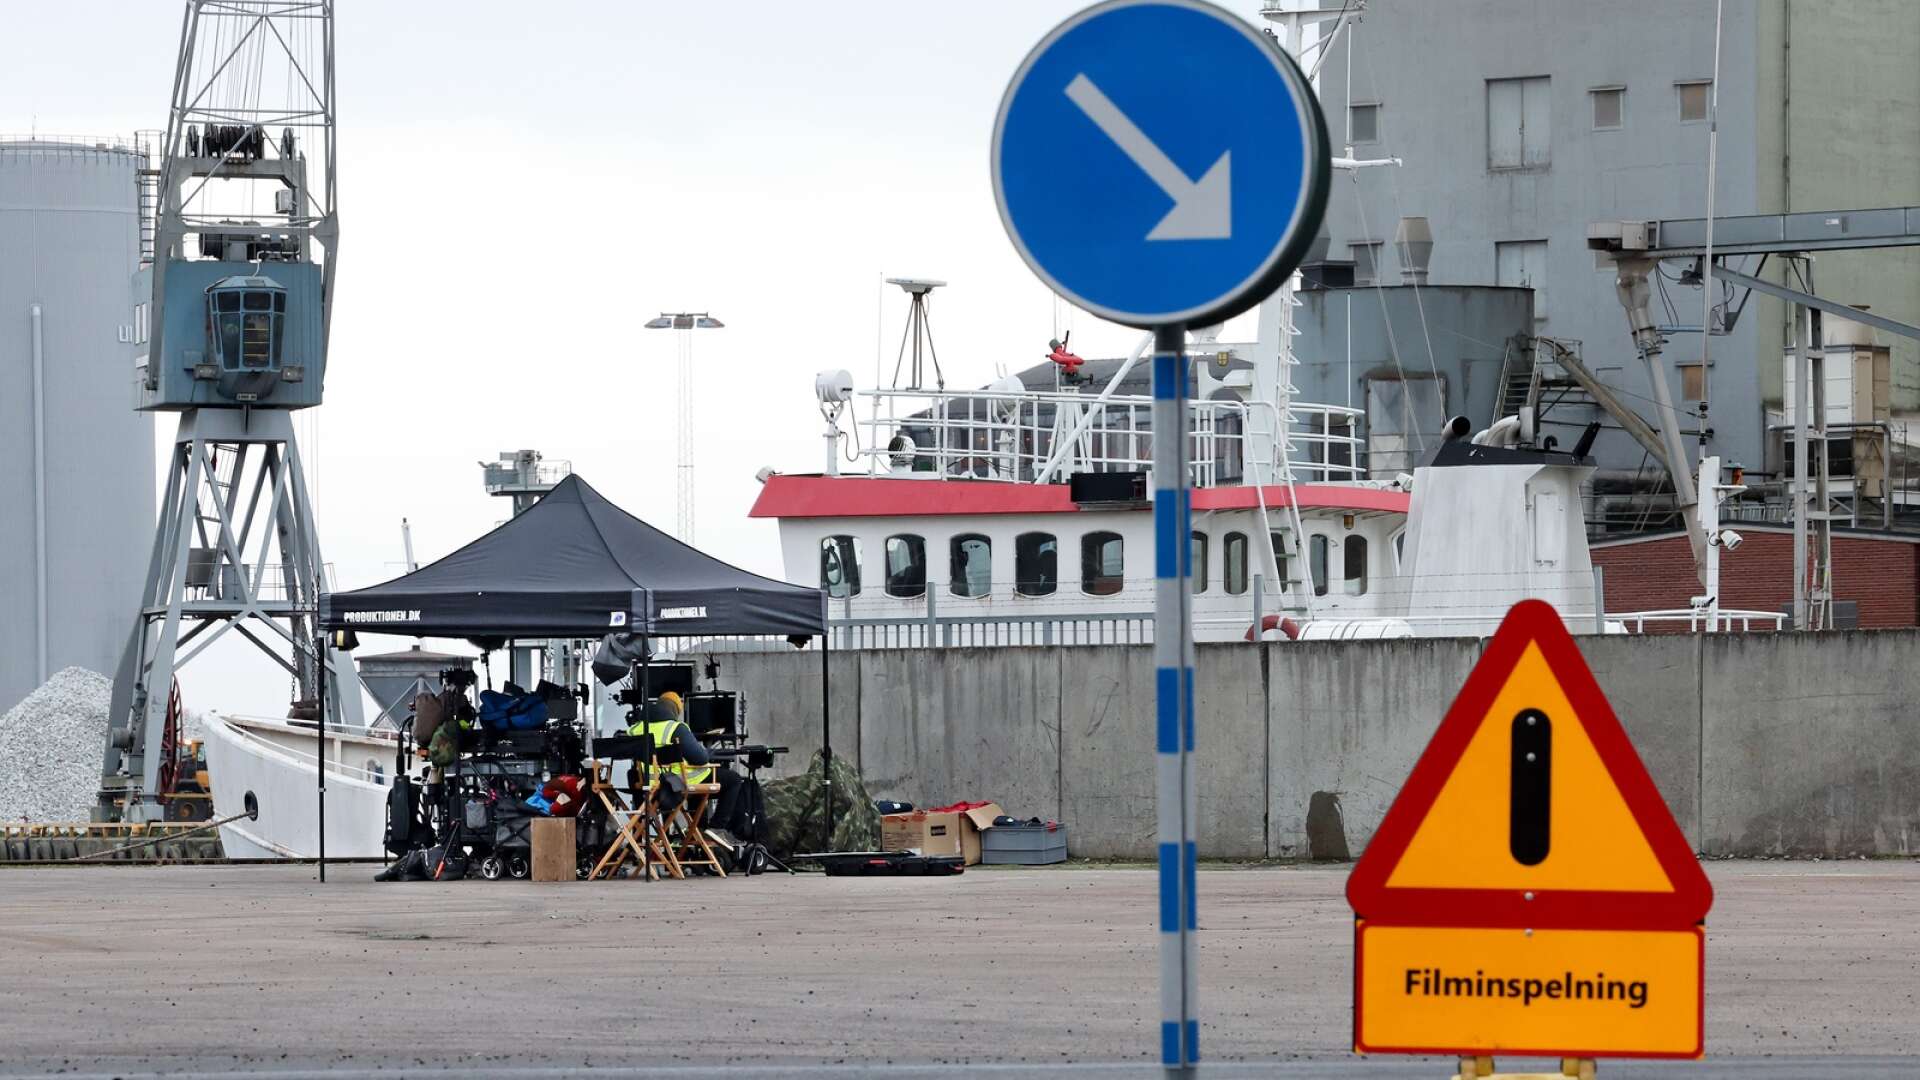 Just nu befinner sig ett jätteteam i Lidköping för att filma scener i hamnen.